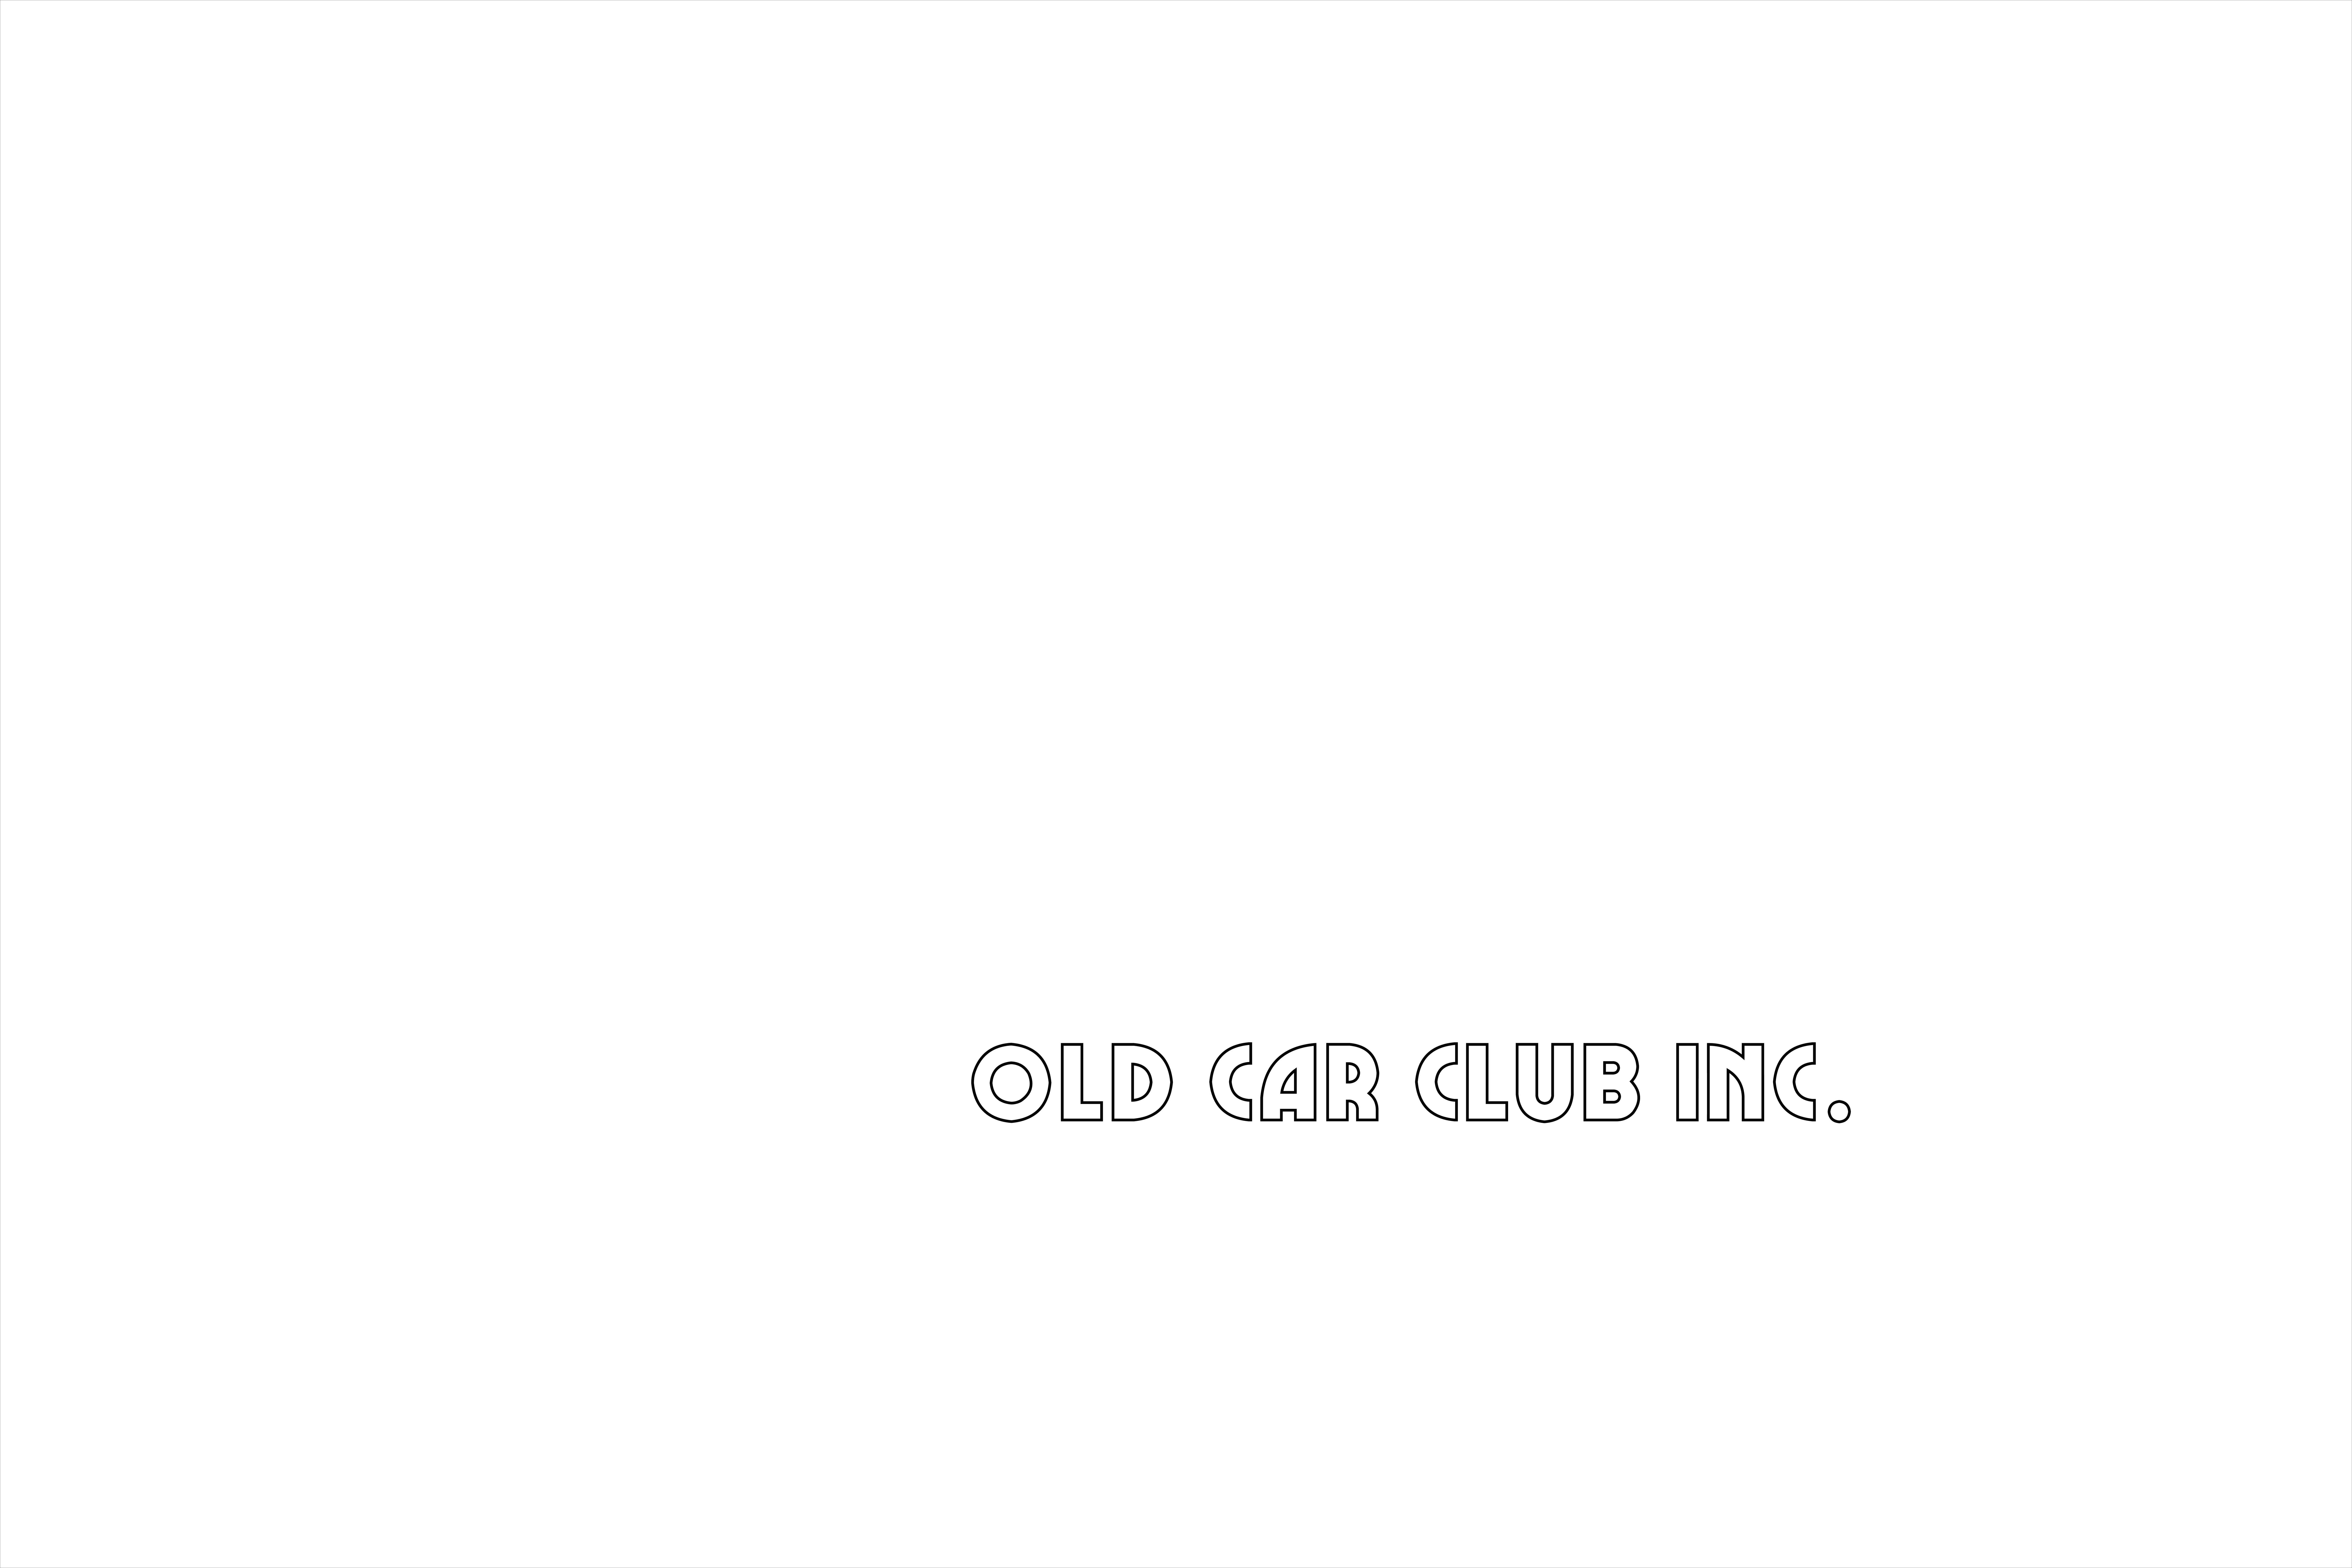 Capital City Old Car Club